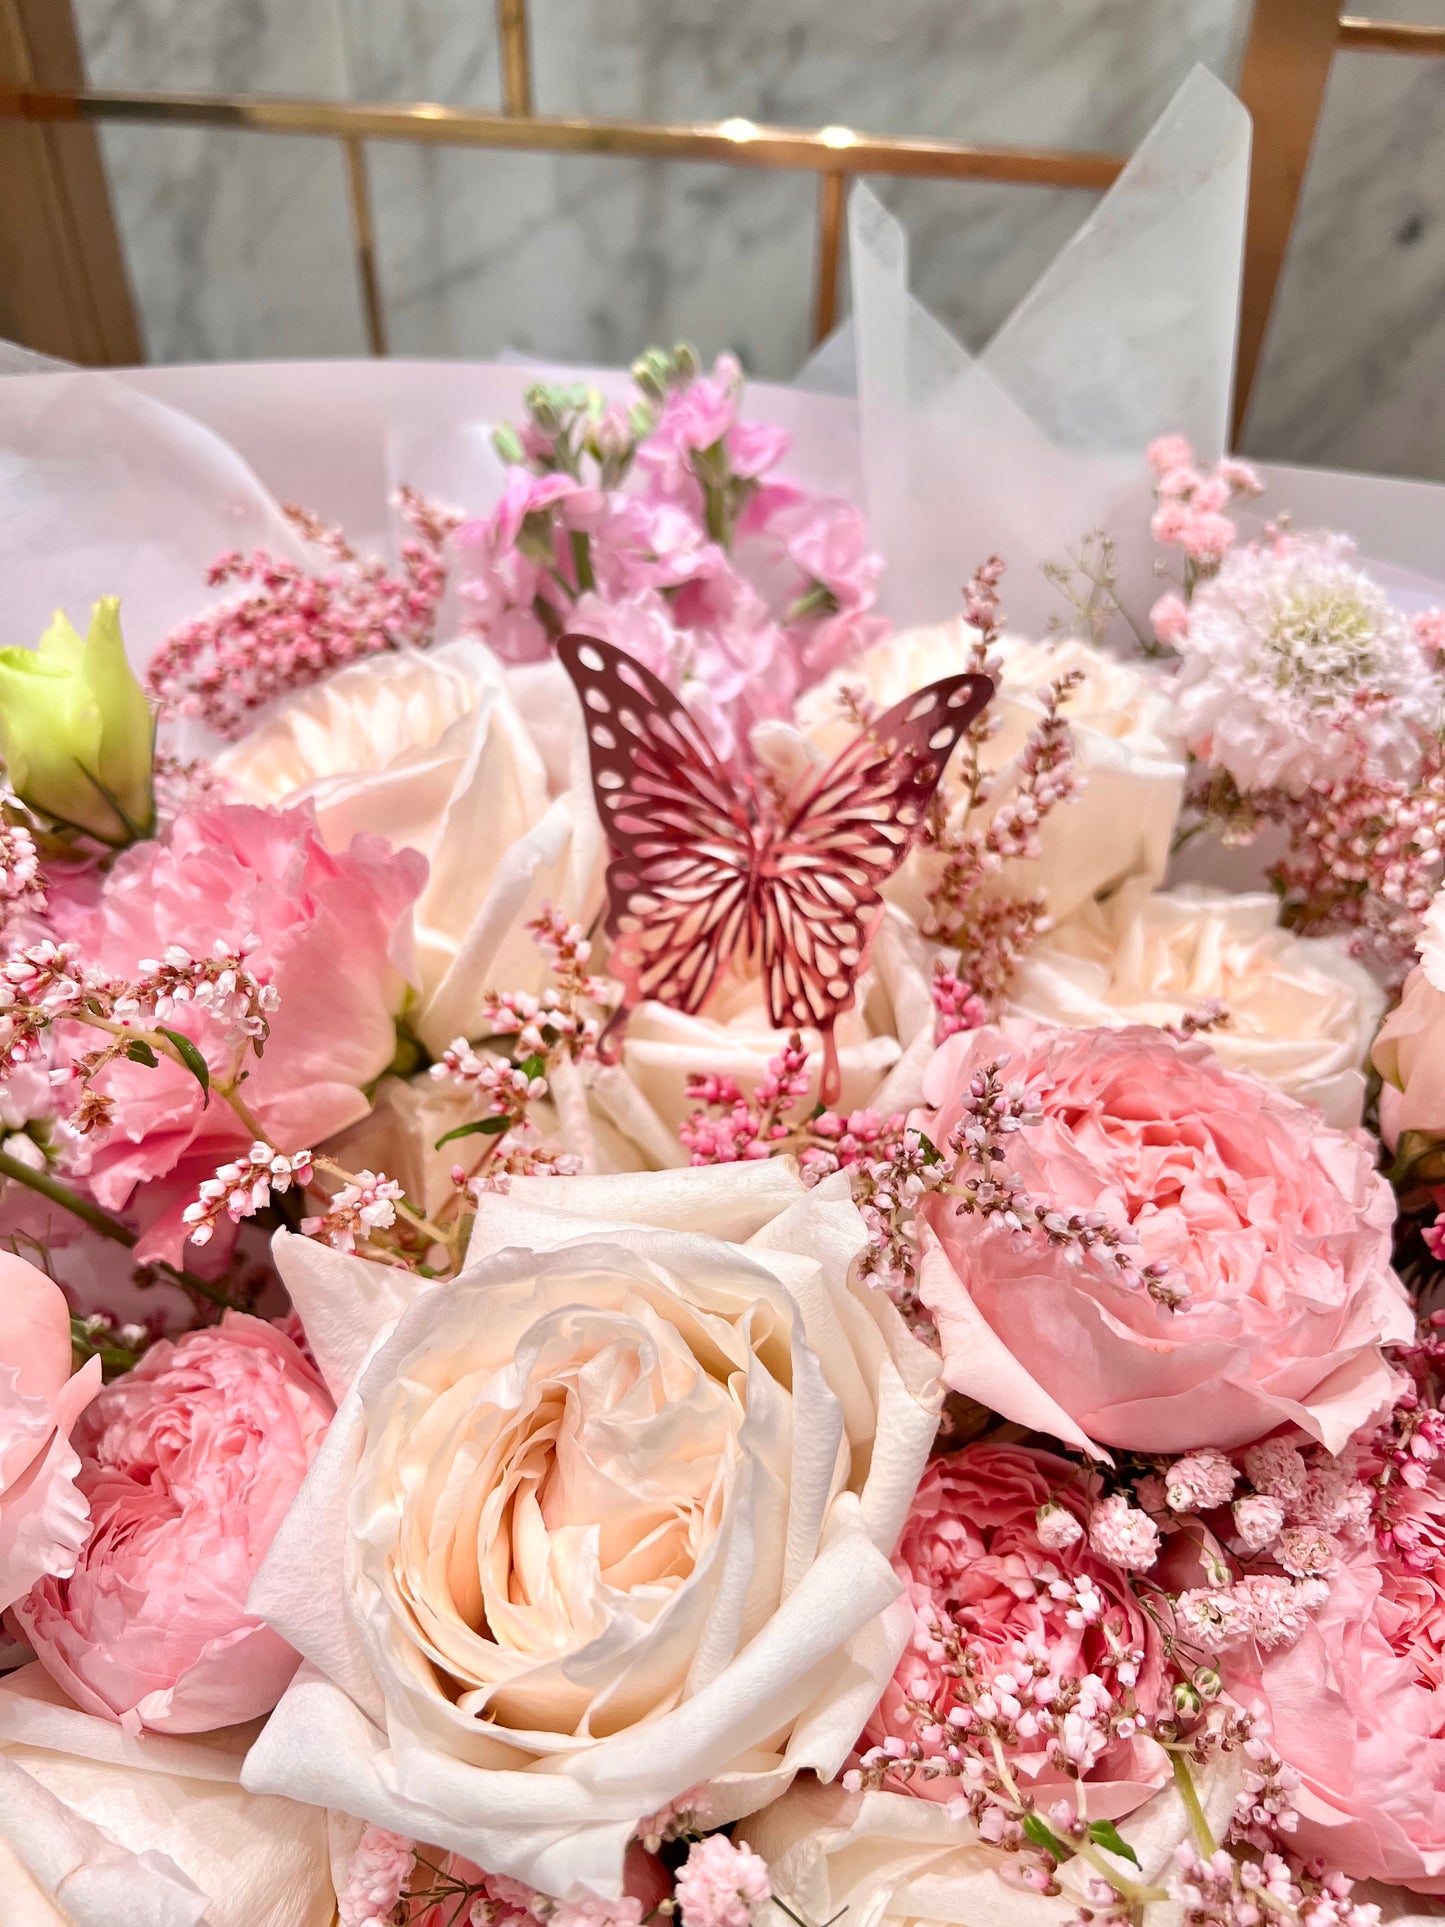 Sakura Snow ❄️⛄️💓 - Pink Kenyan & David Austin White Ohara Garden Rose